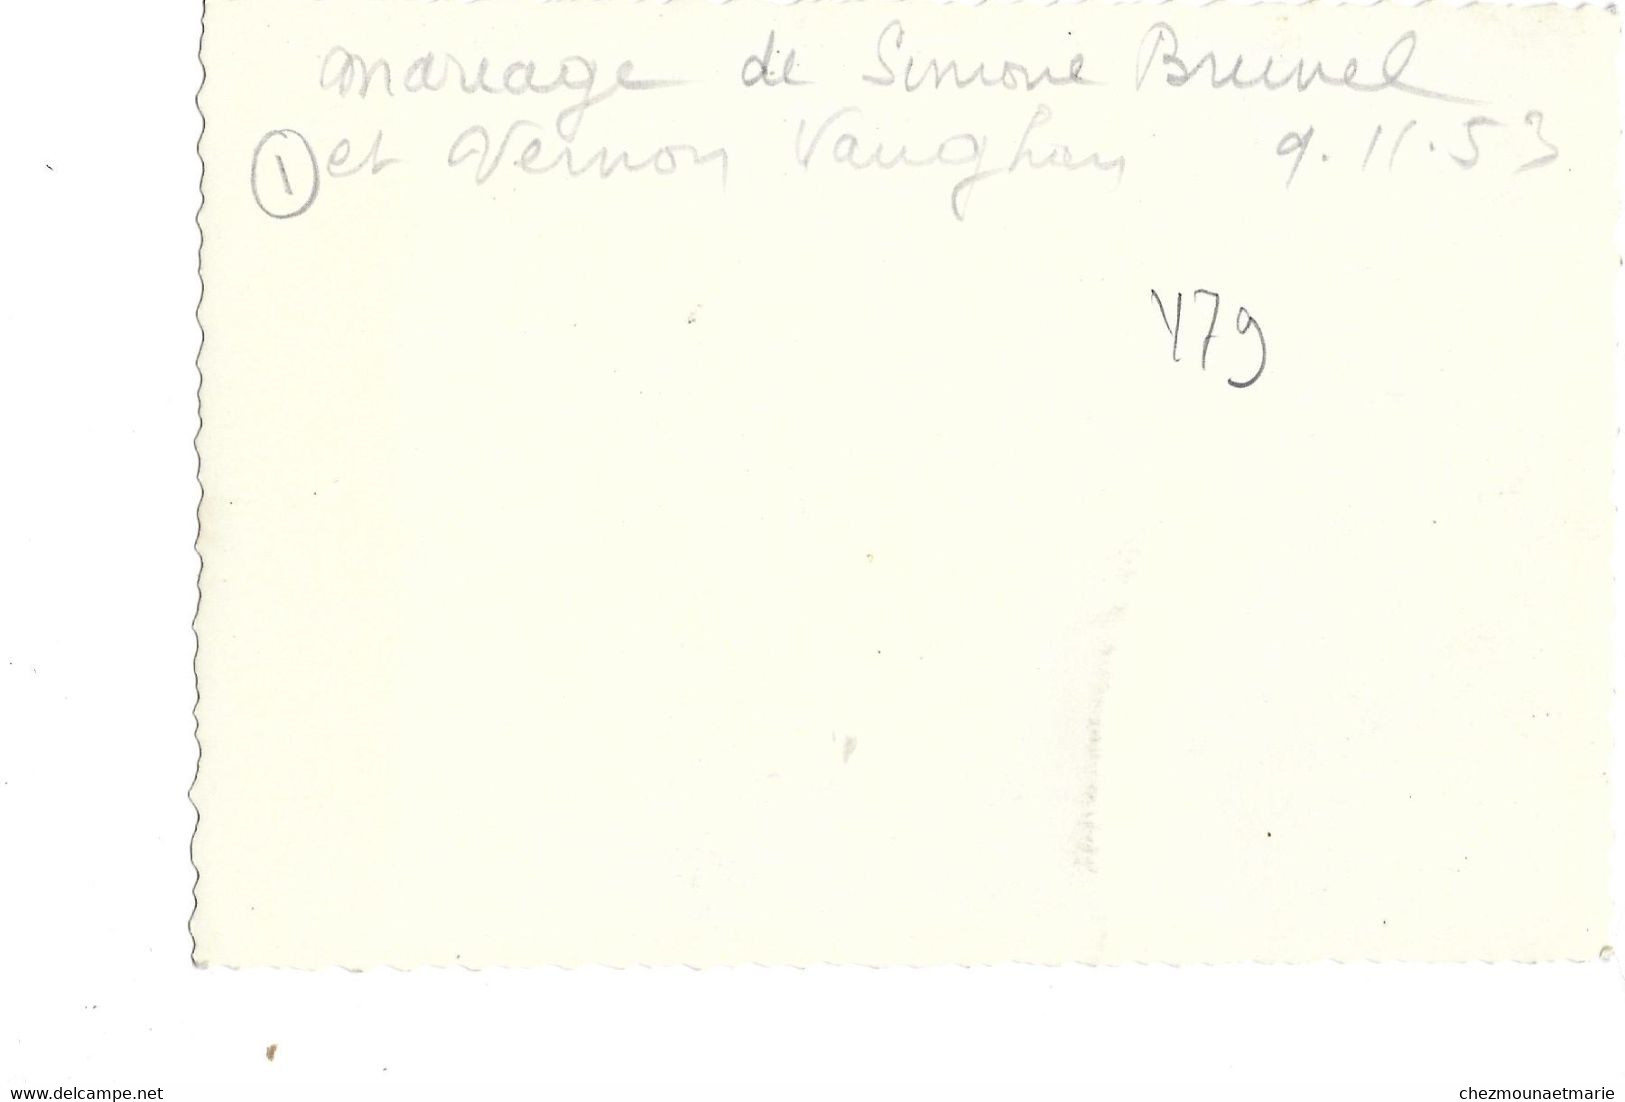 MARIAGE SIMONE BRUNEL VERNON VAUGHAN 1953  - PHOTO ST BRIEUC - Personnes Identifiées